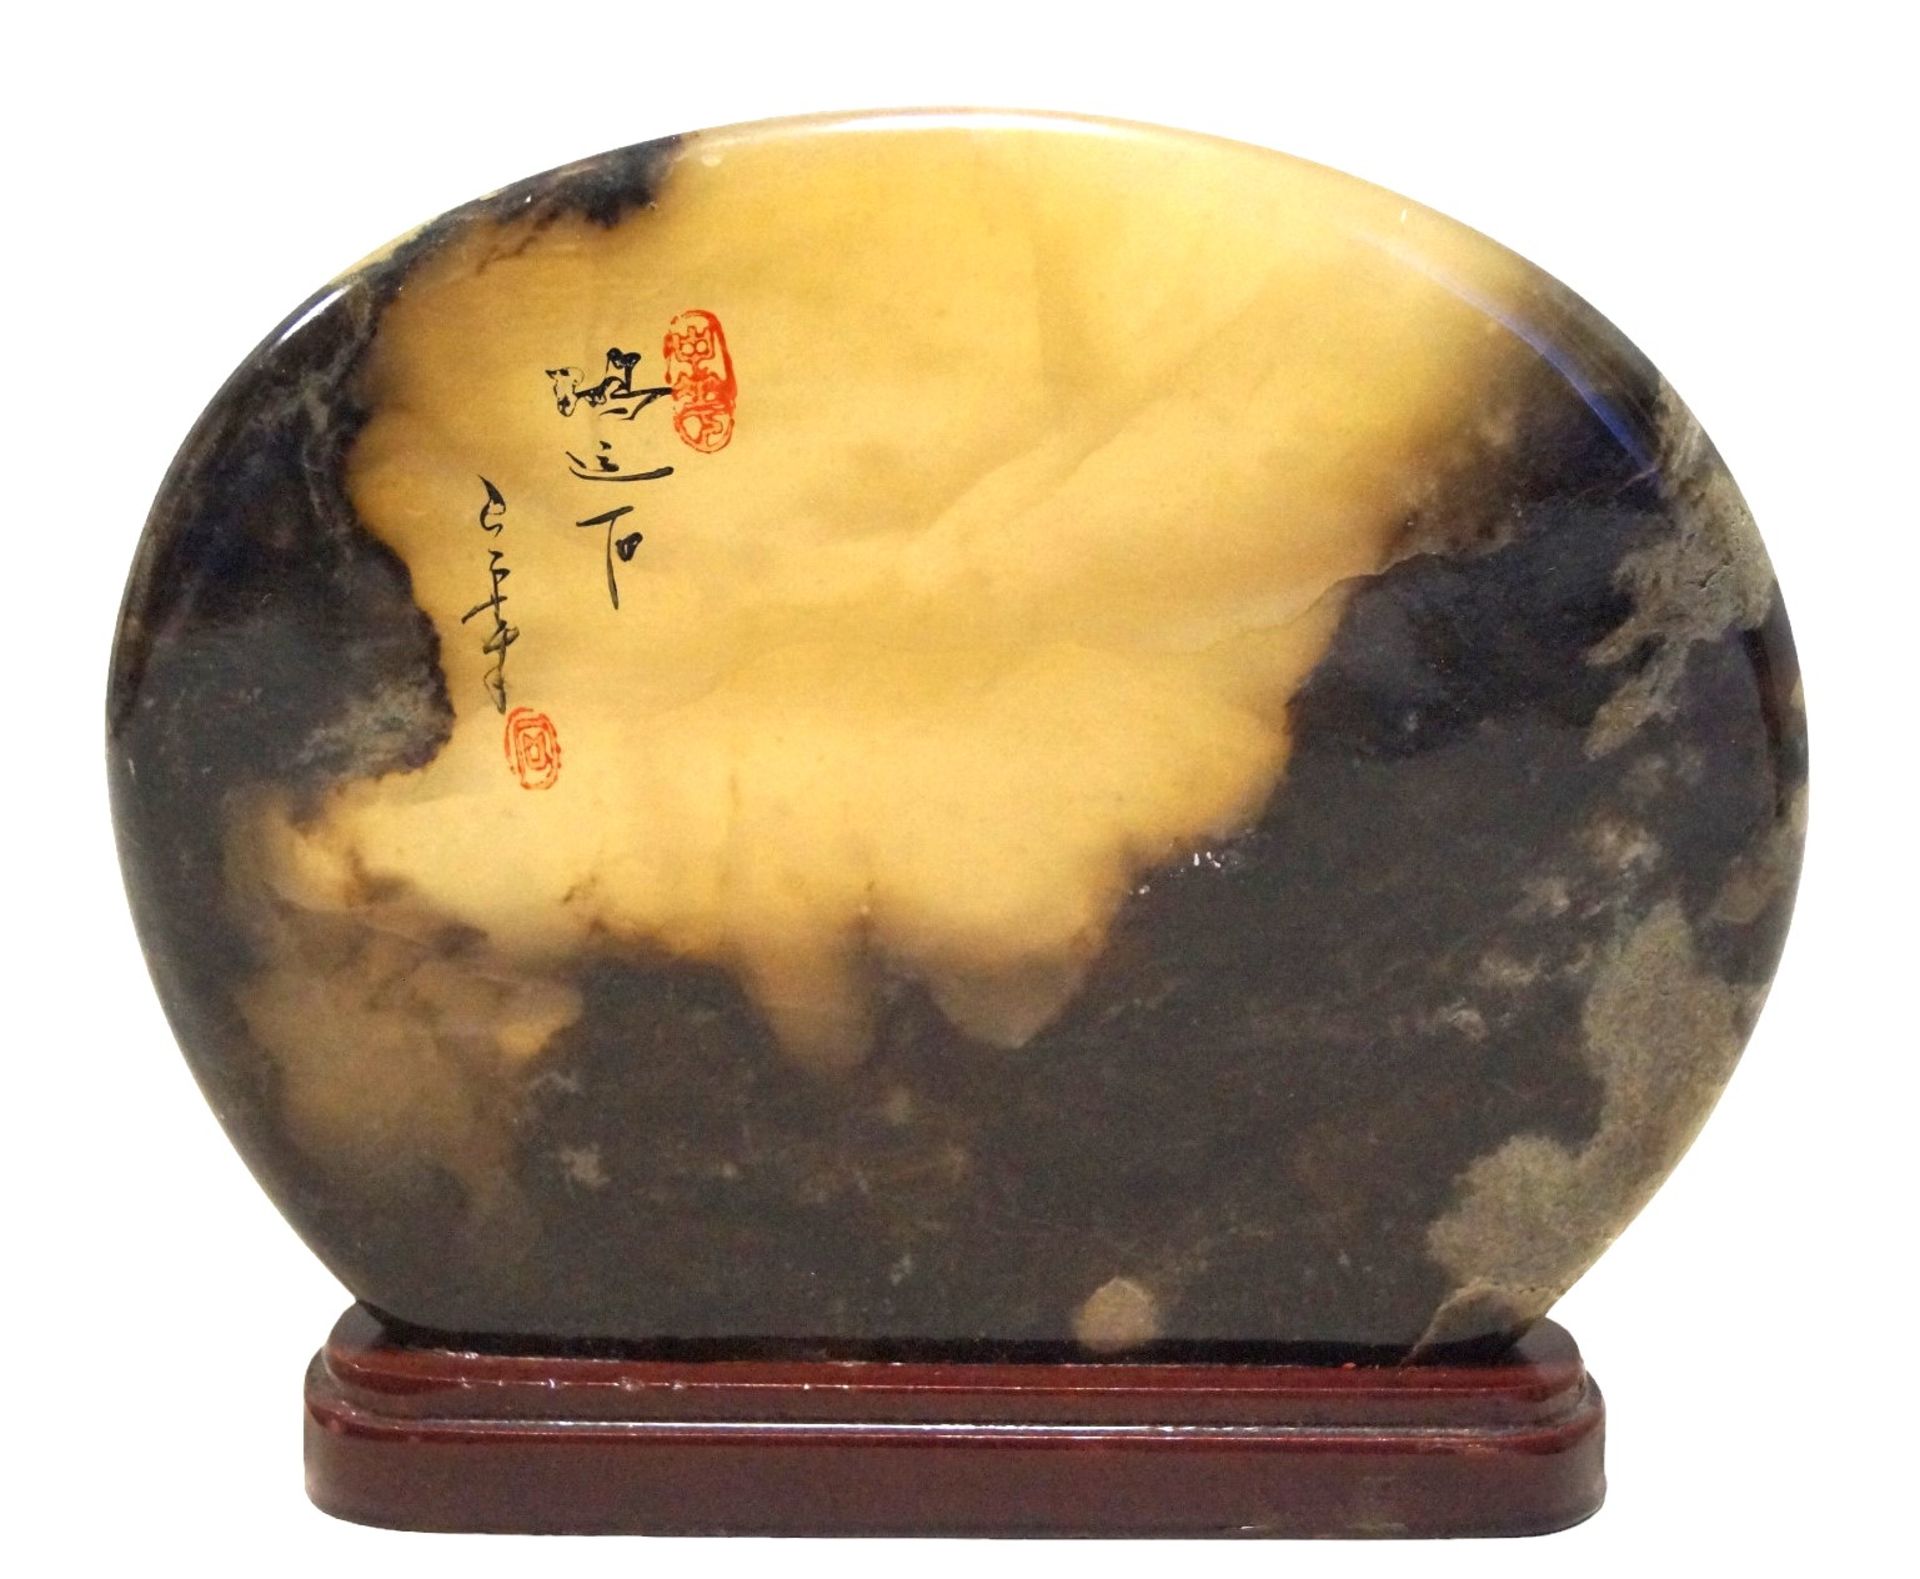 Größere Ziersteinscheibe, wohl aus Aragonit gefertigt; Oberfläche lackiert und mit asiatischen Schr